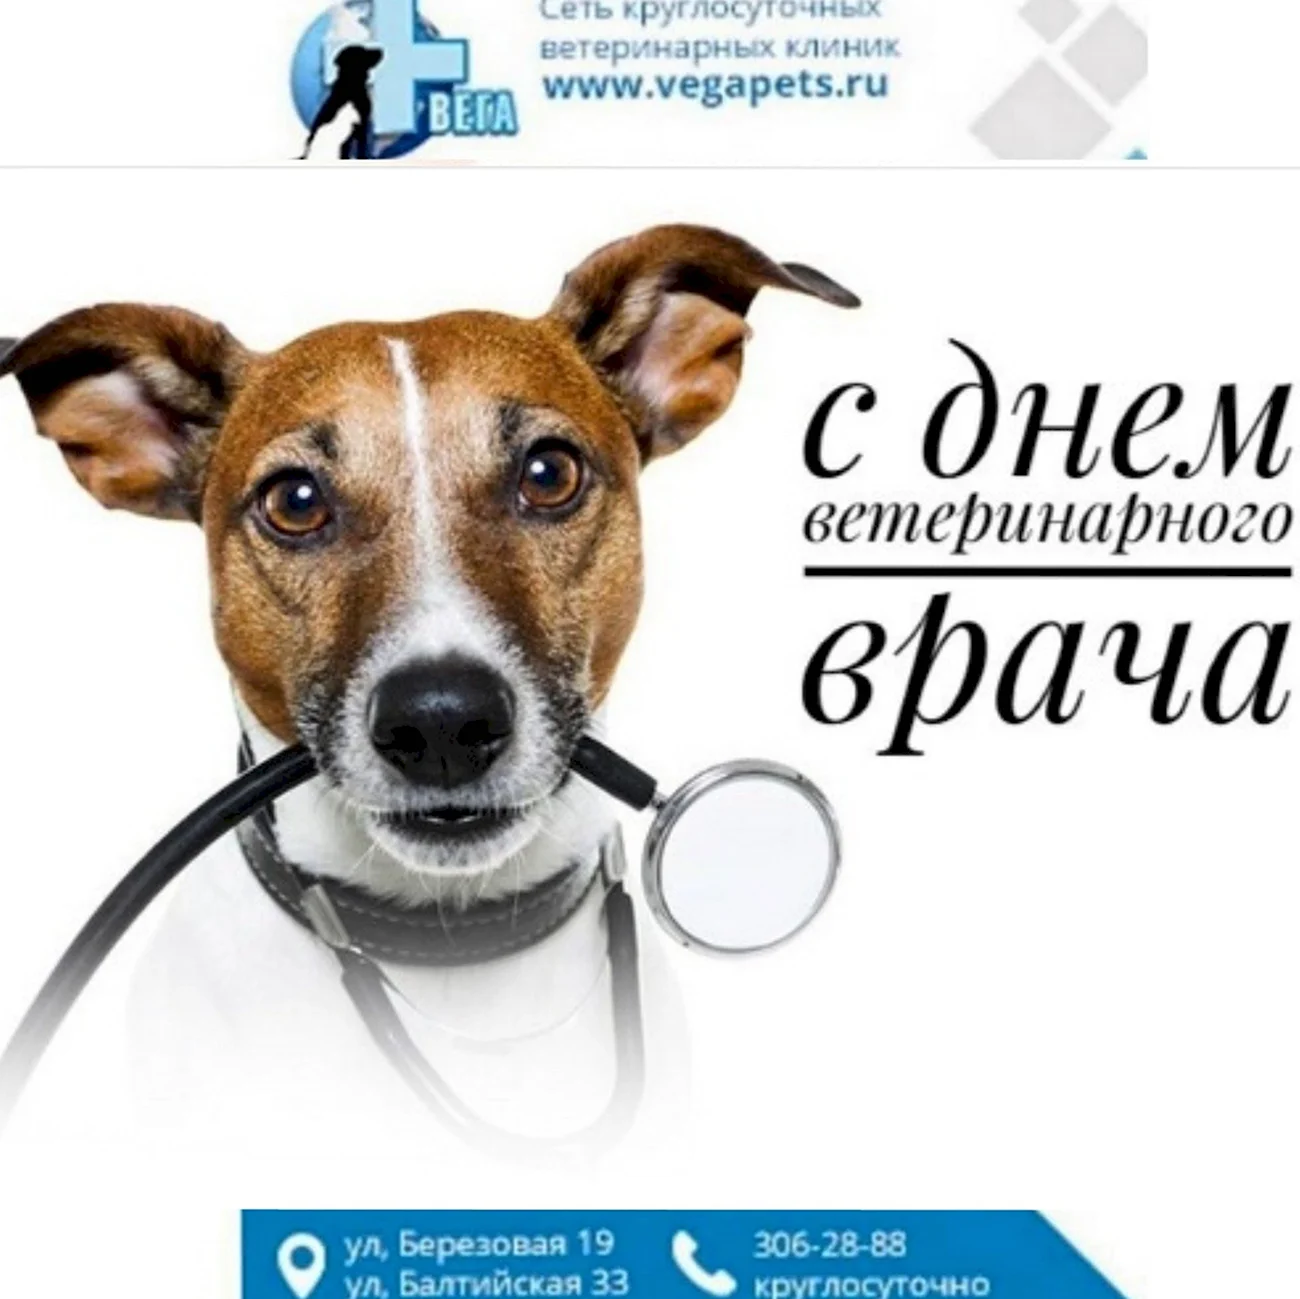 Международный день ветеринарного врача World Veterinary Day. Красивая картинка